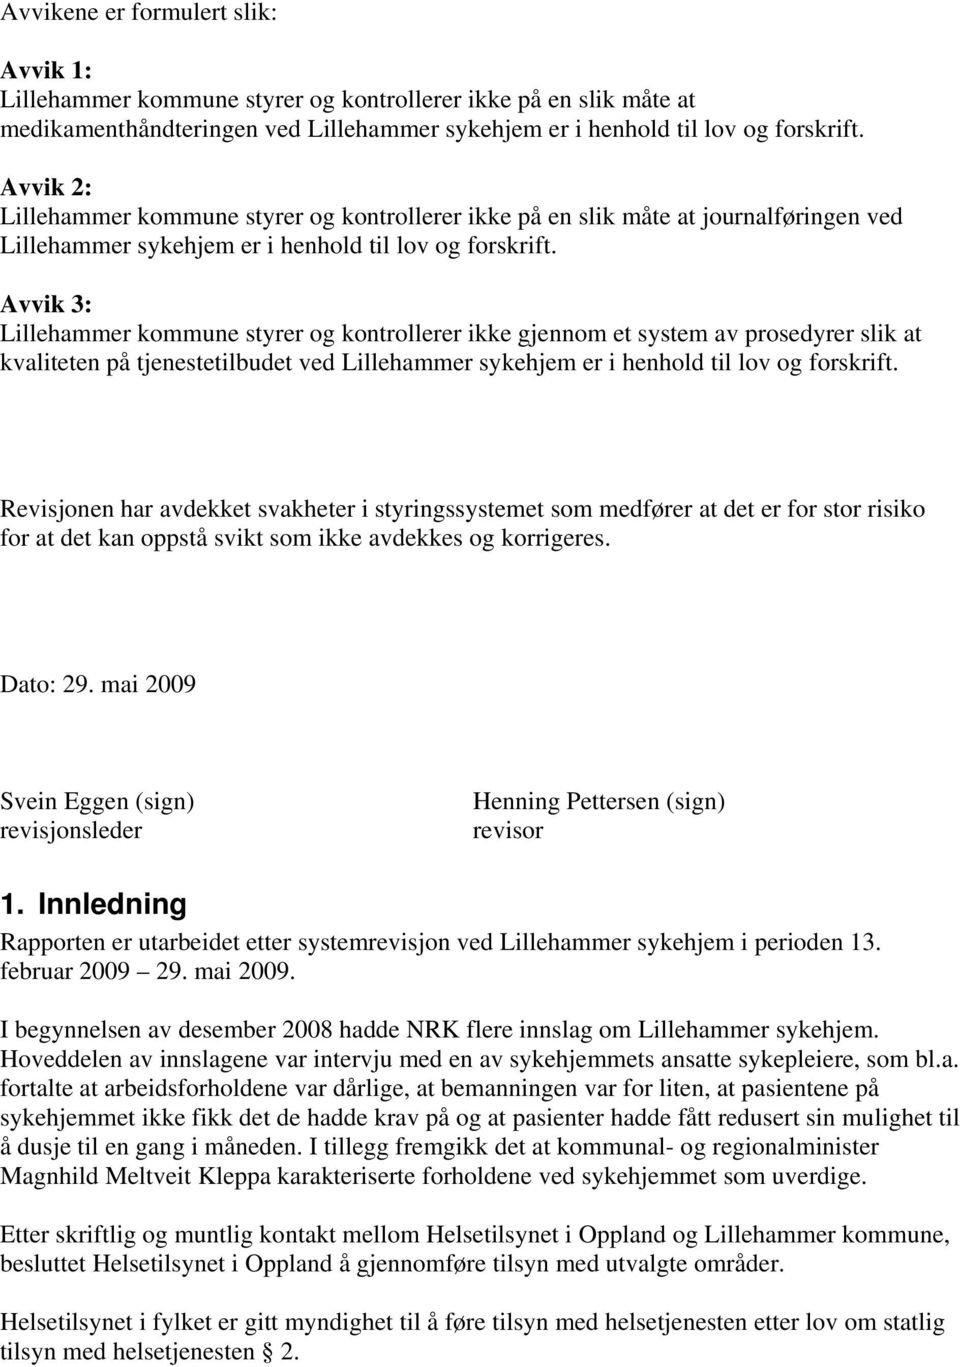 Avvik 3: Lillehammer kommune styrer og kontrollerer ikke gjennom et system av prosedyrer slik at kvaliteten på tjenestetilbudet ved Lillehammer sykehjem er i henhold til lov og forskrift.